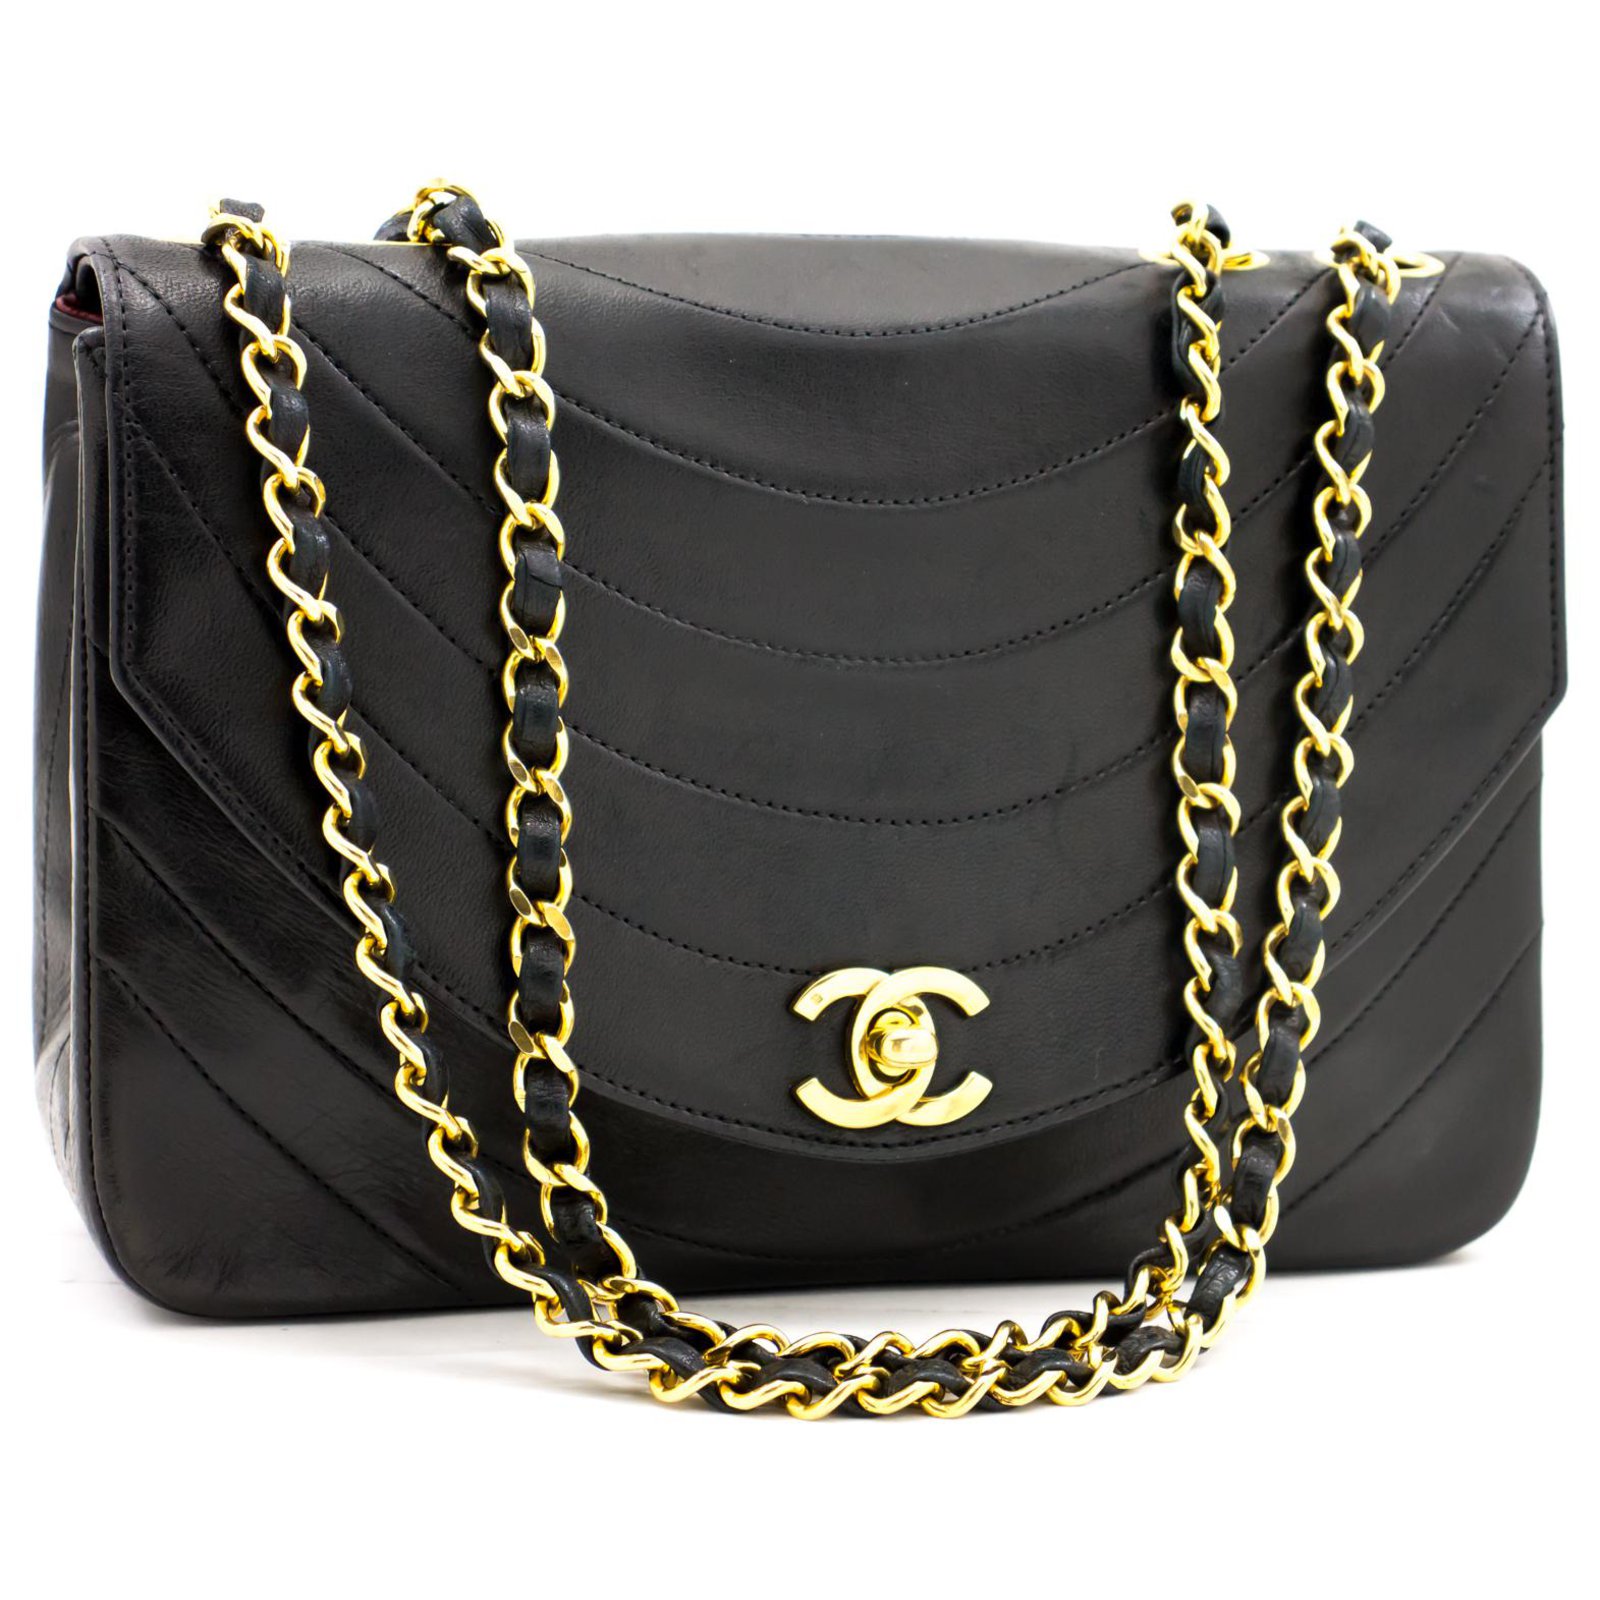 CHANEL Vintage Half Moon Shoulder Bag Beige Quilted Leather Gold Hardware  1980s - Chelsea Vintage Couture